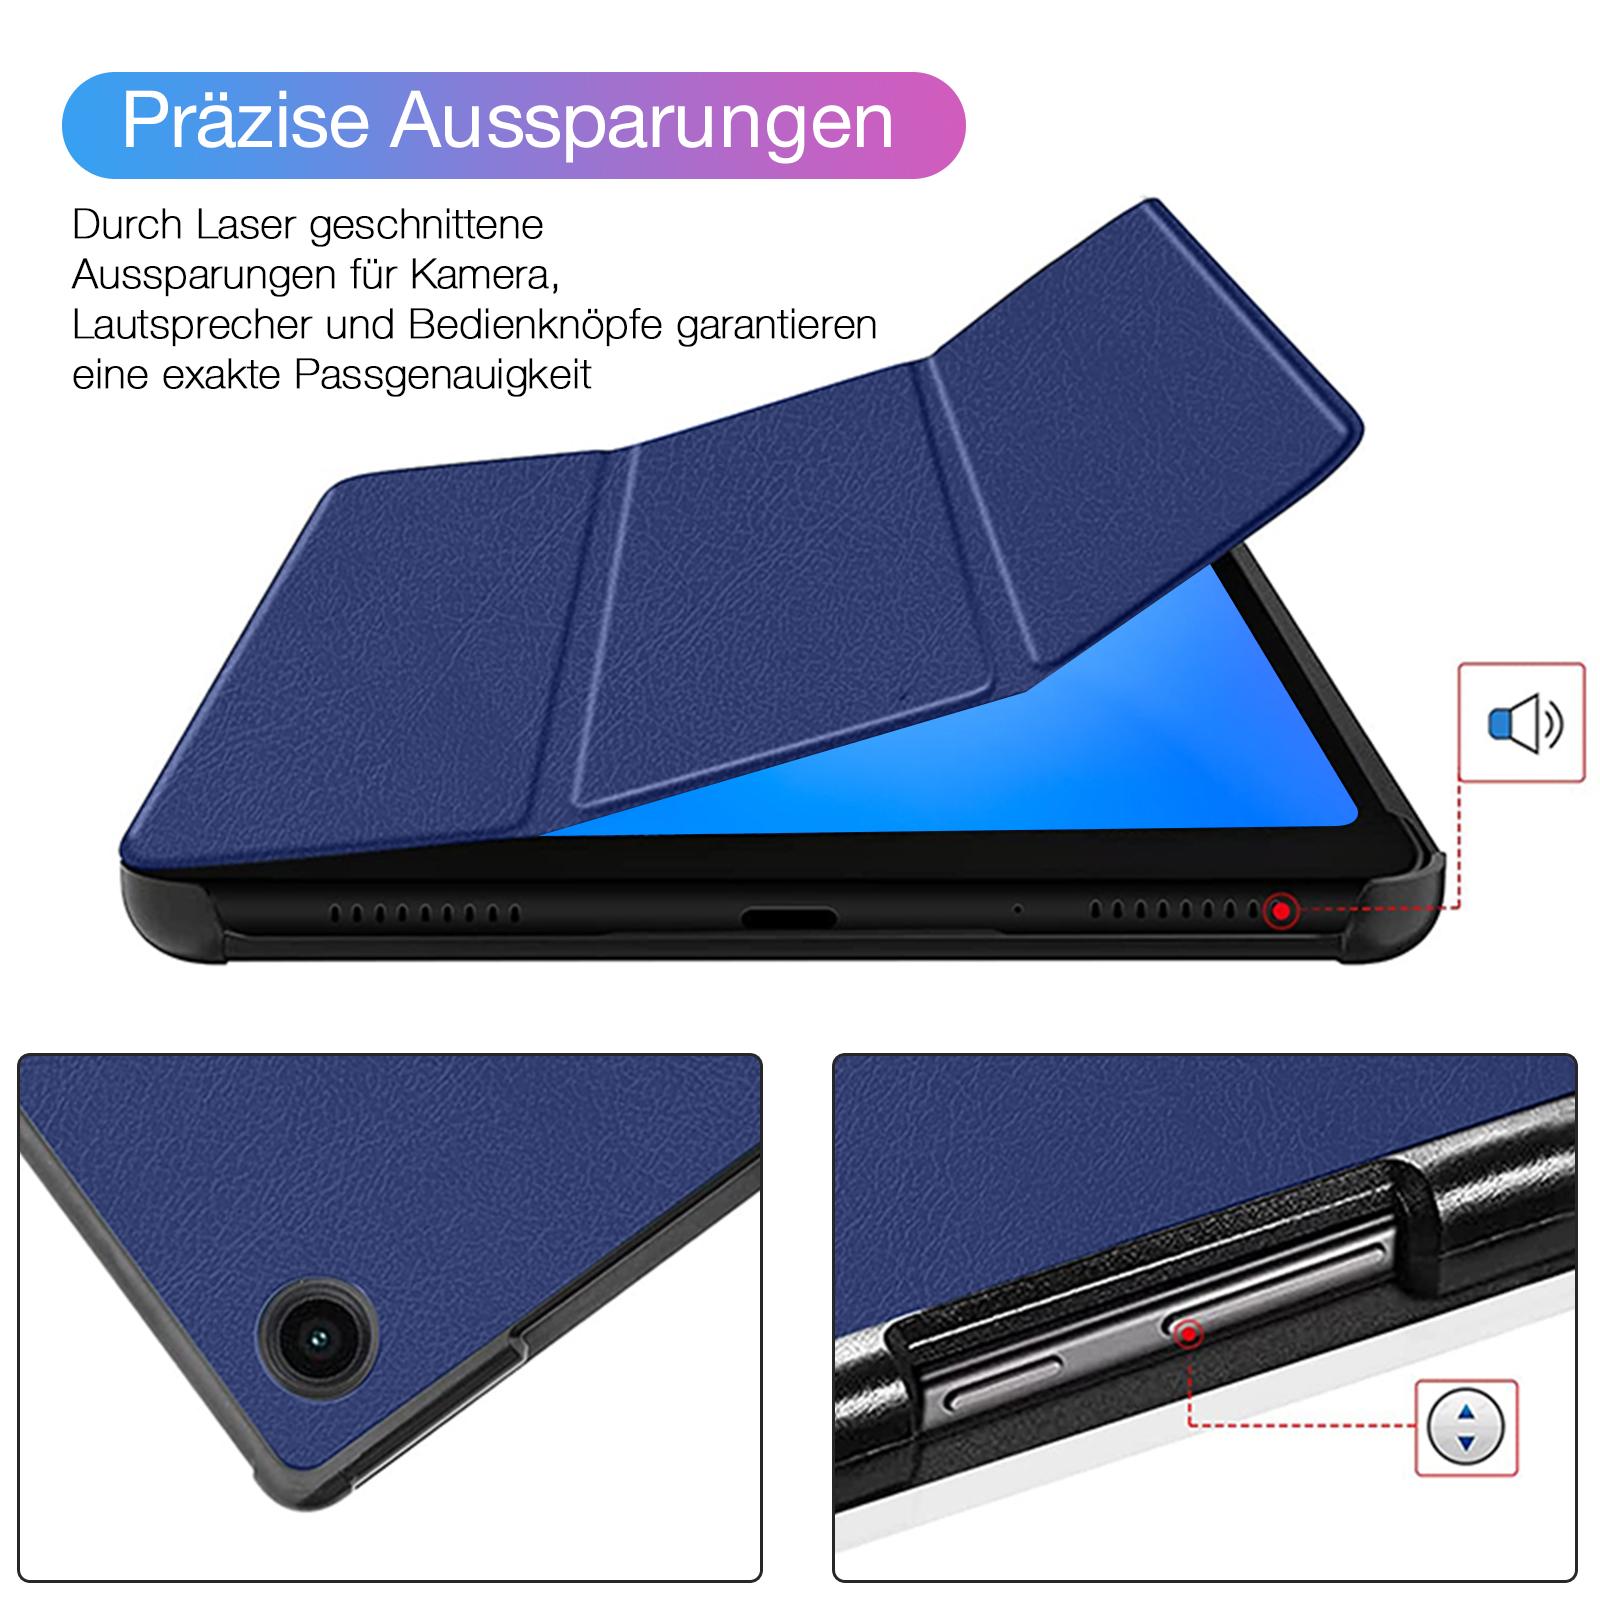 Schutzhülle 2x Folie für Lenovo Tab M10 Gen 3 10,1 Zoll (2022) Tablet v Farben